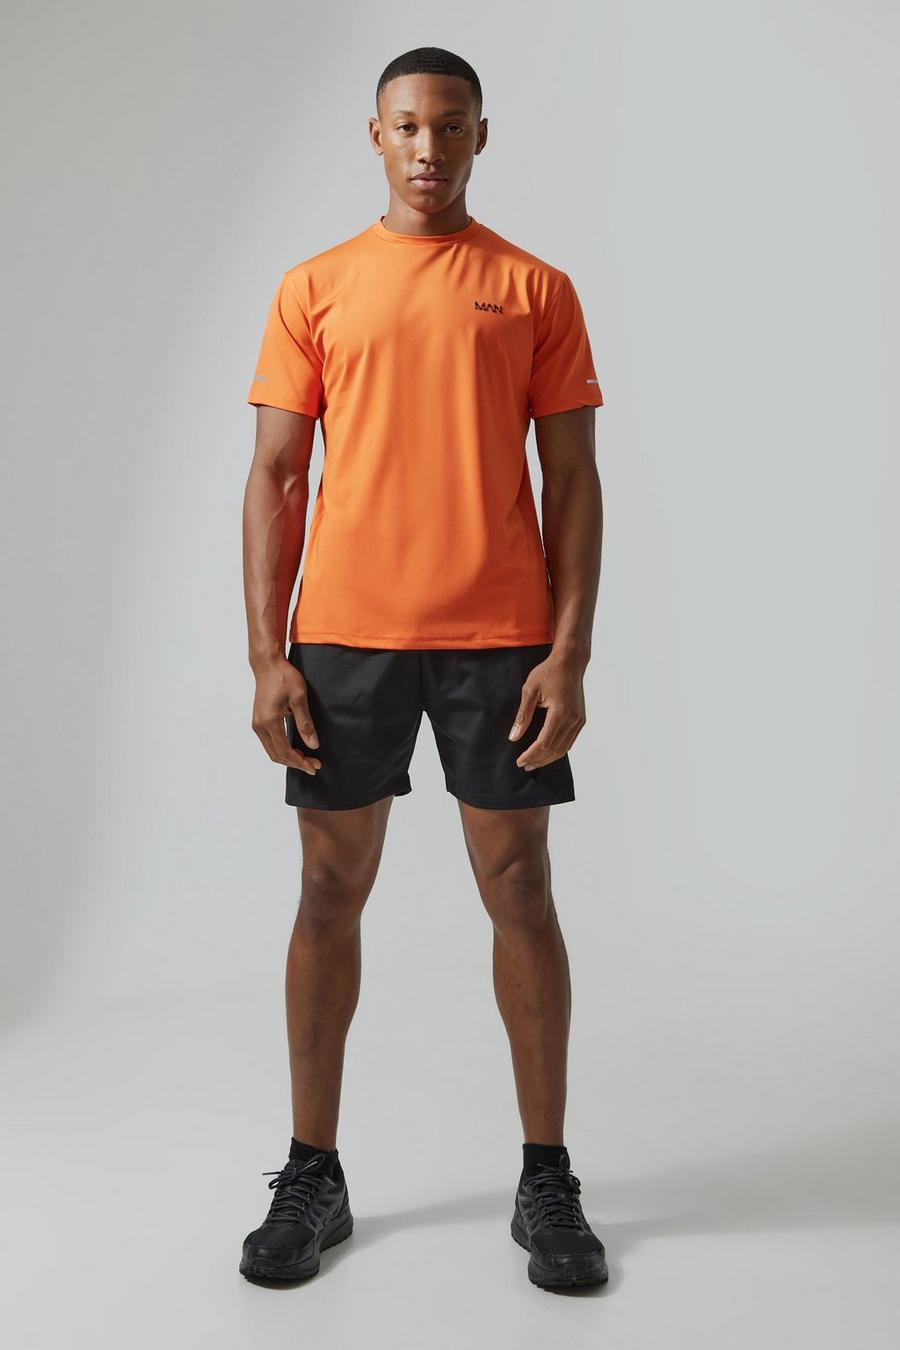 Ensemble de sport avec t-shirt et short - MAN Active, Orange image number 1